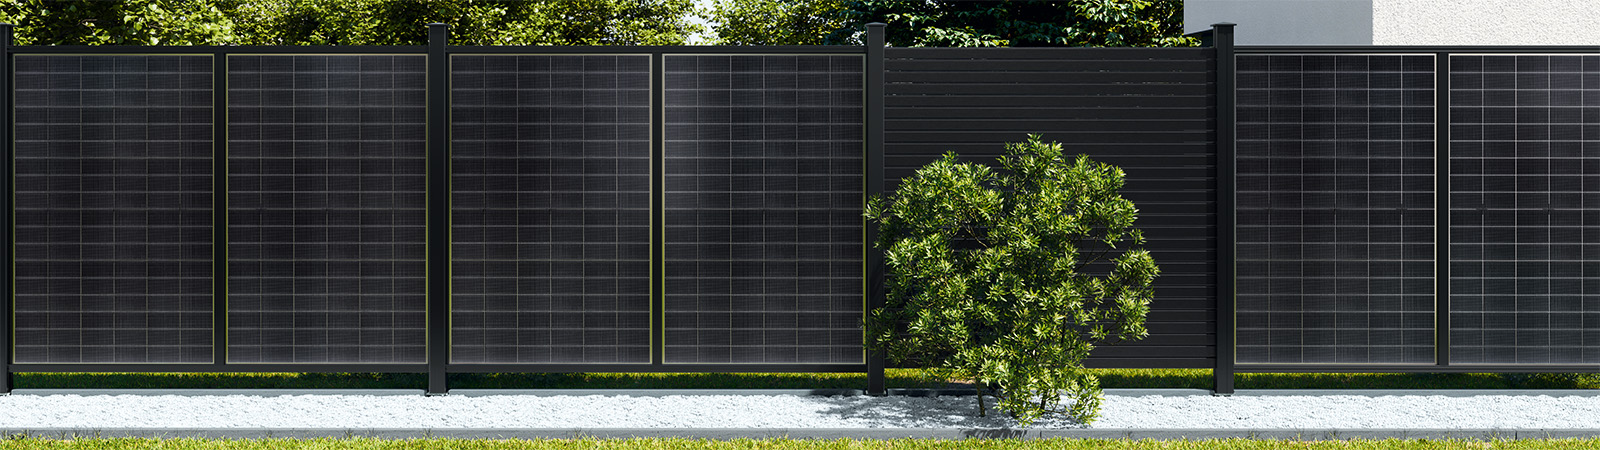 Osmo Sichtblende SOLAR-FENCE mit Aluminiumpfosten in Anthrazit - nachhaltig und energiesparend